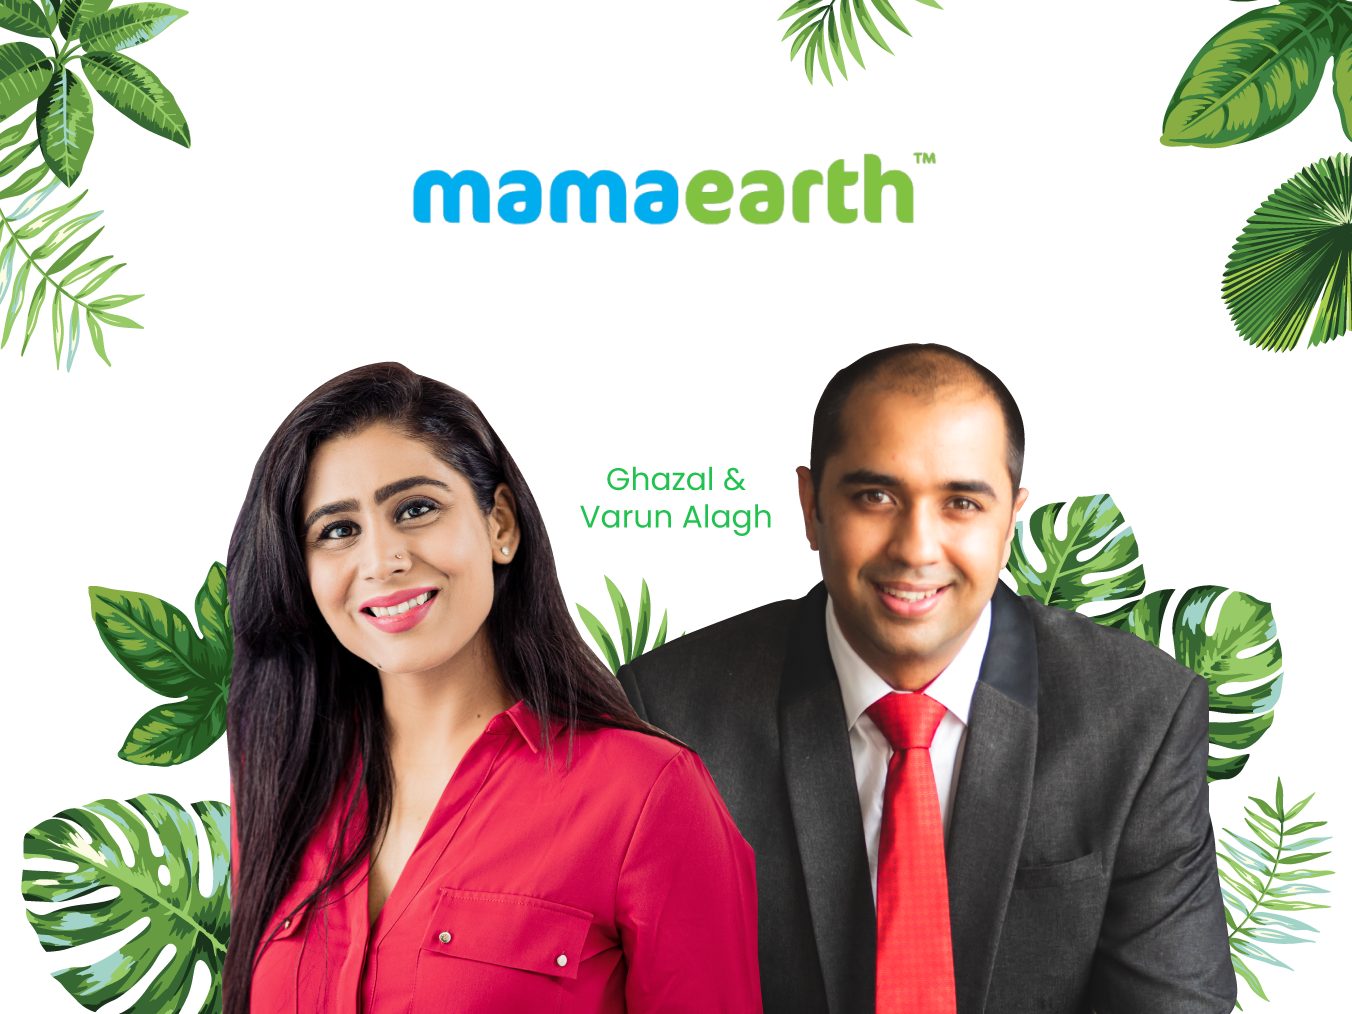 MAMAEARTH - Ghazal & Varun Alagh